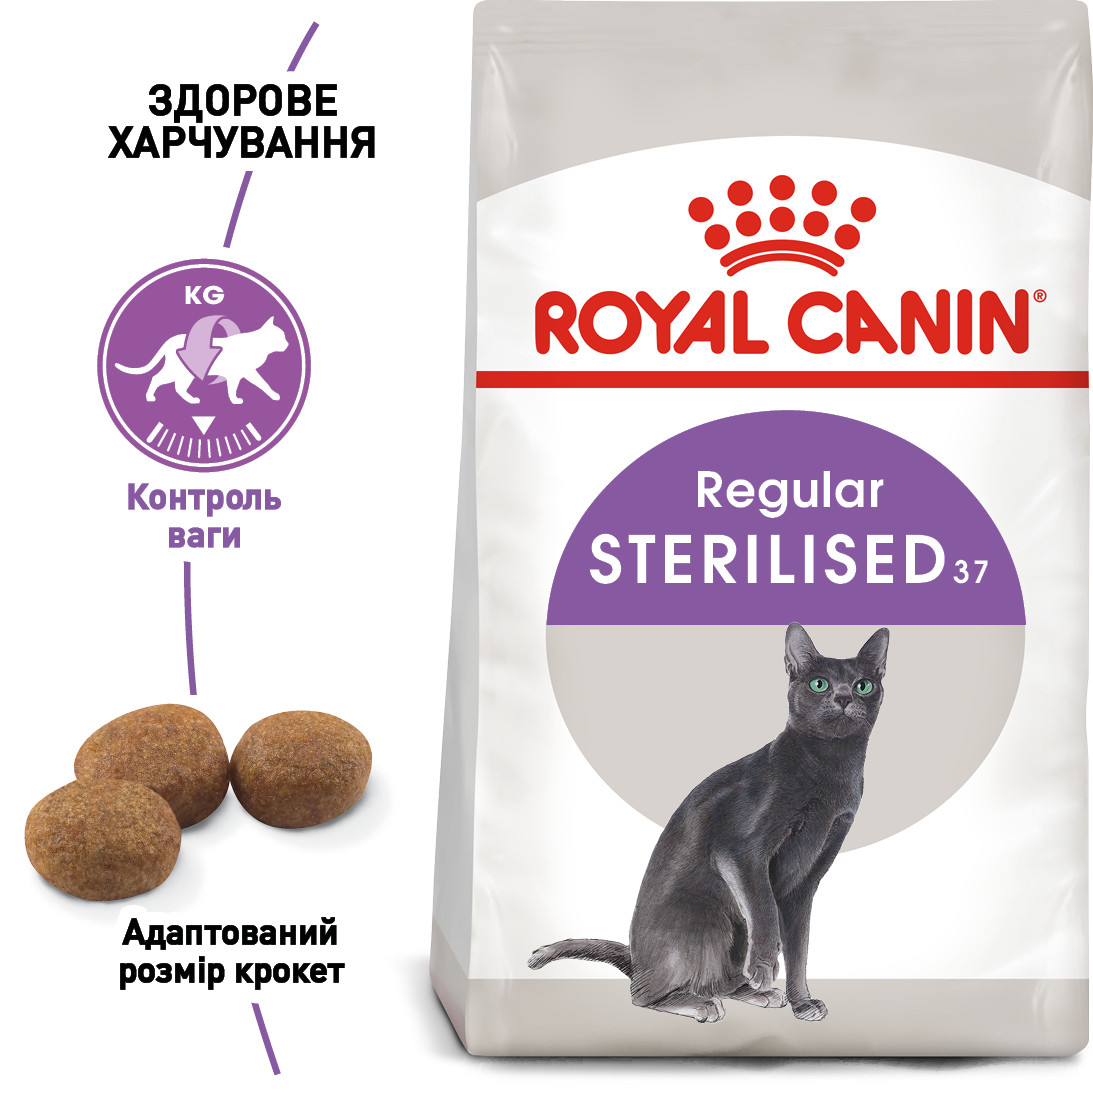 Royal Canin Sterilised 37 сухий корм для стерилізованих/кастрованих котів від 1 до 7 років, 2КГ, фото 1